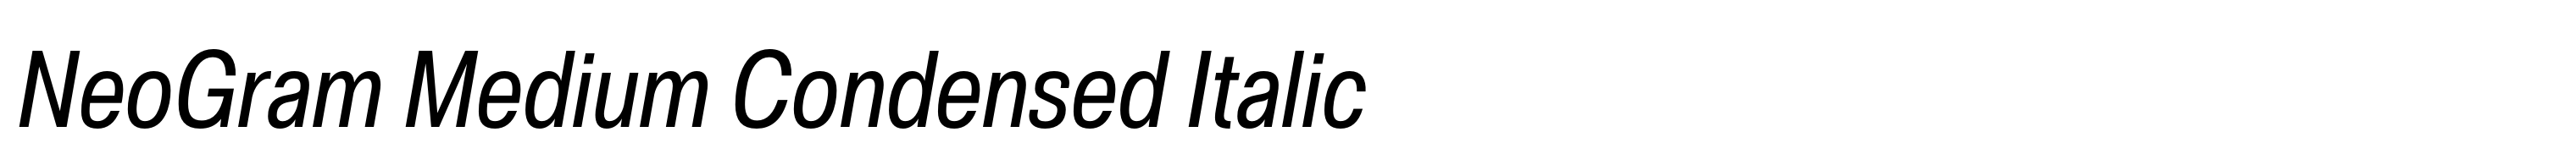 NeoGram Medium Condensed Italic